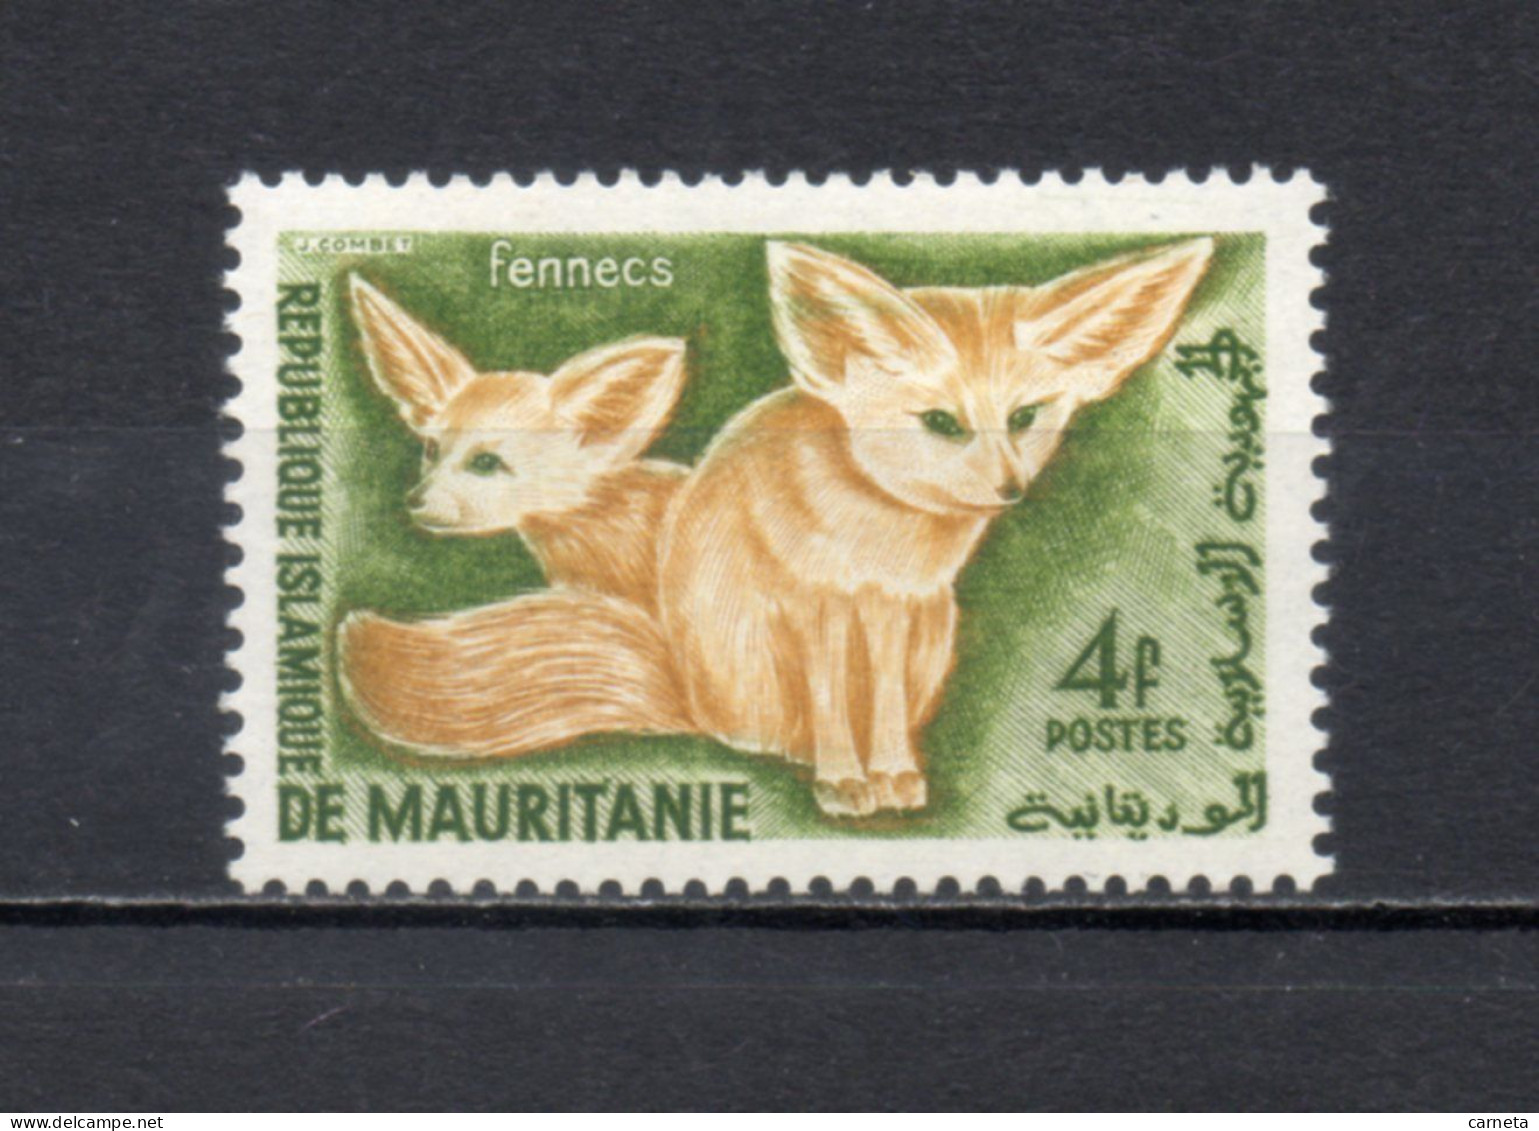 MAURITANIE  N° 144   NEUF SANS CHARNIERE   COTE 0.80€    ANIMAUX FAUNE - Mauritanie (1960-...)